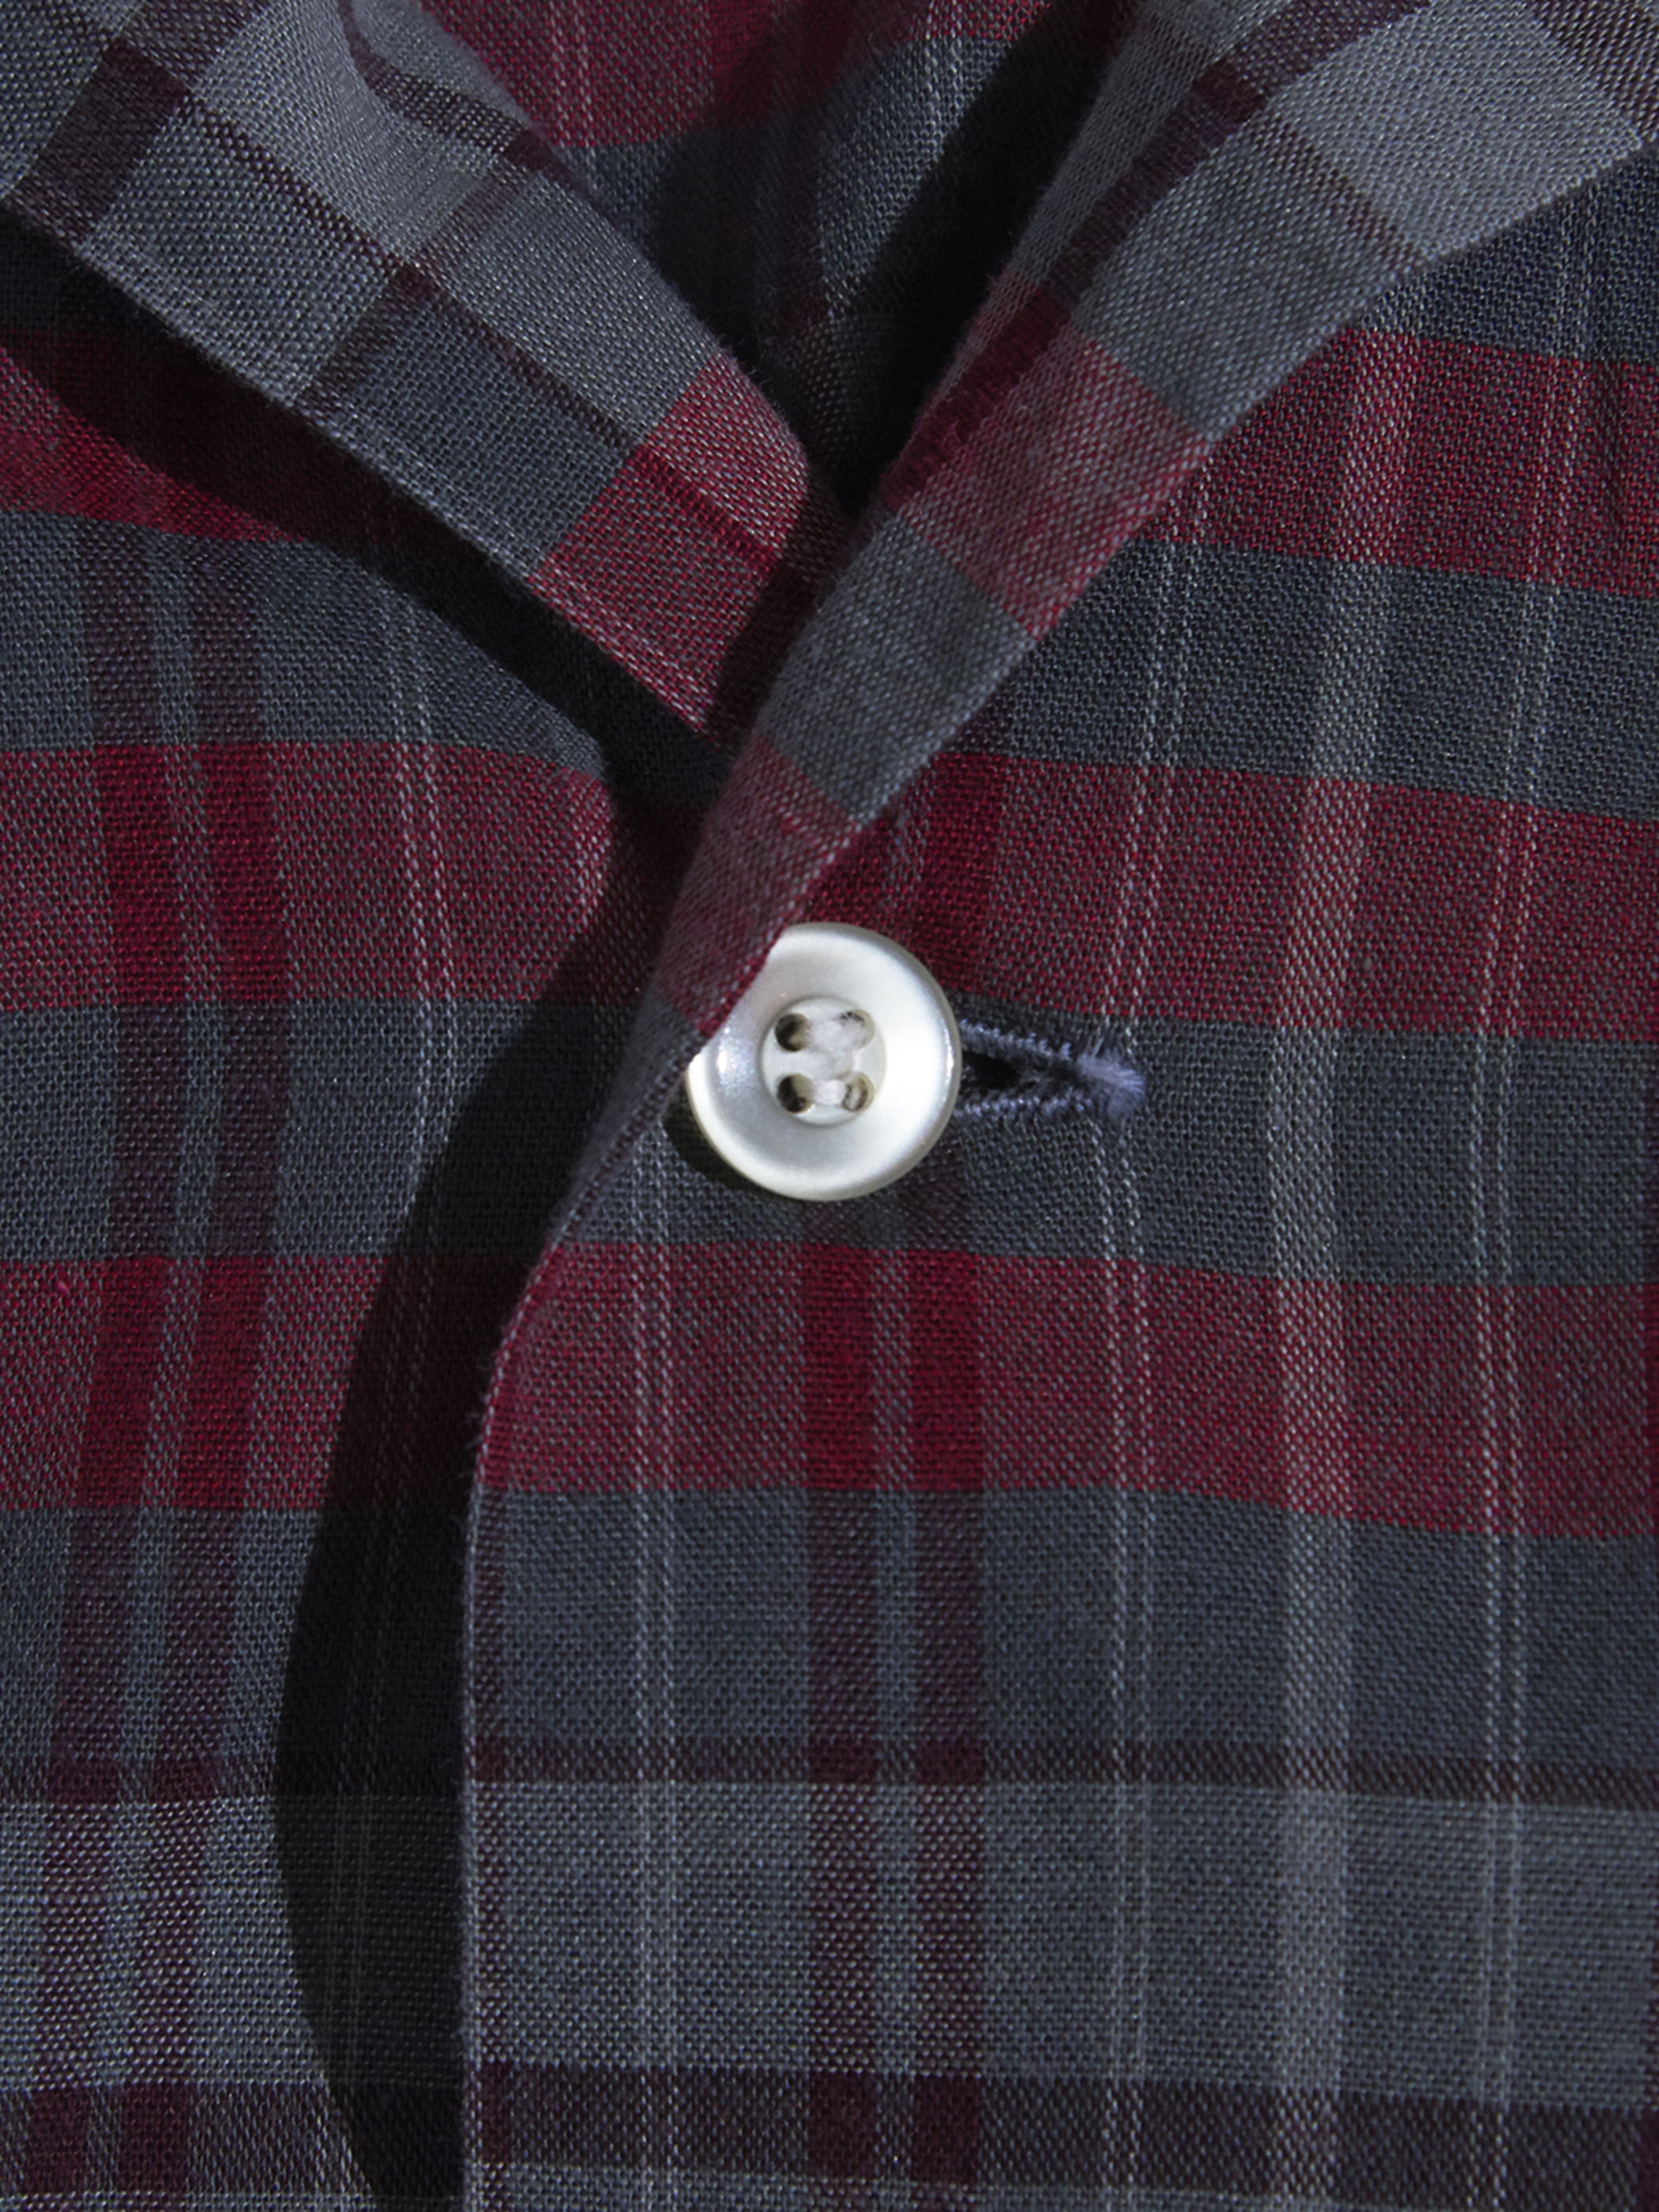 1960s "TOWNCRAFT" cotton open collar check shirt -GREY-